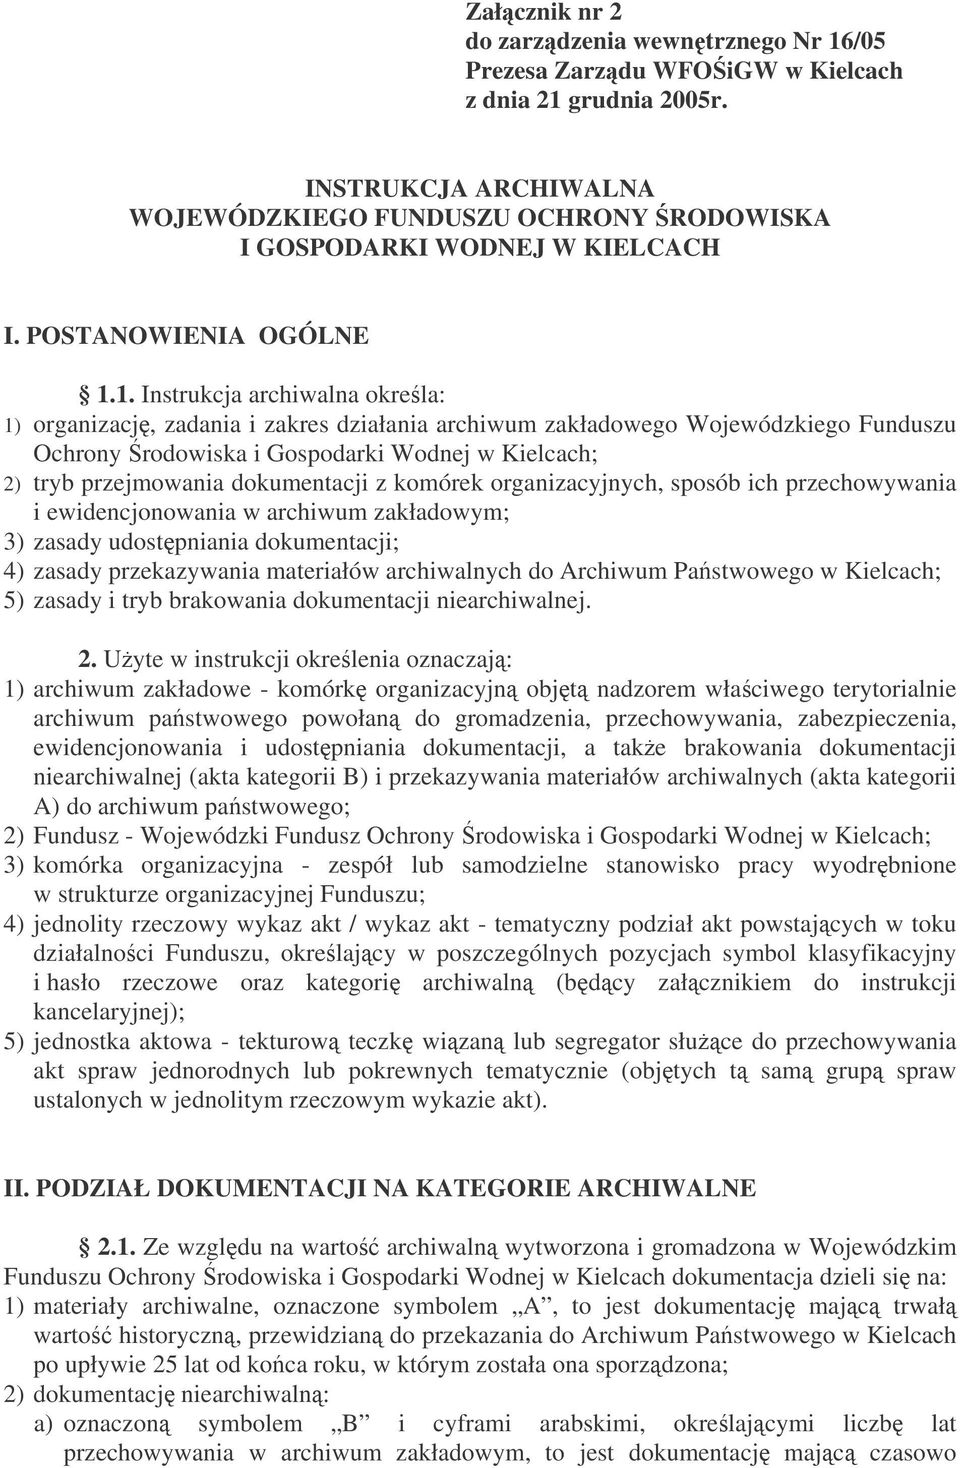 1. Instrukcja archiwalna okrela: 1) organizacj, zadania i zakres działania archiwum zakładowego Wojewódzkiego Funduszu Ochrony rodowiska i Gospodarki Wodnej w Kielcach; 2) tryb przejmowania